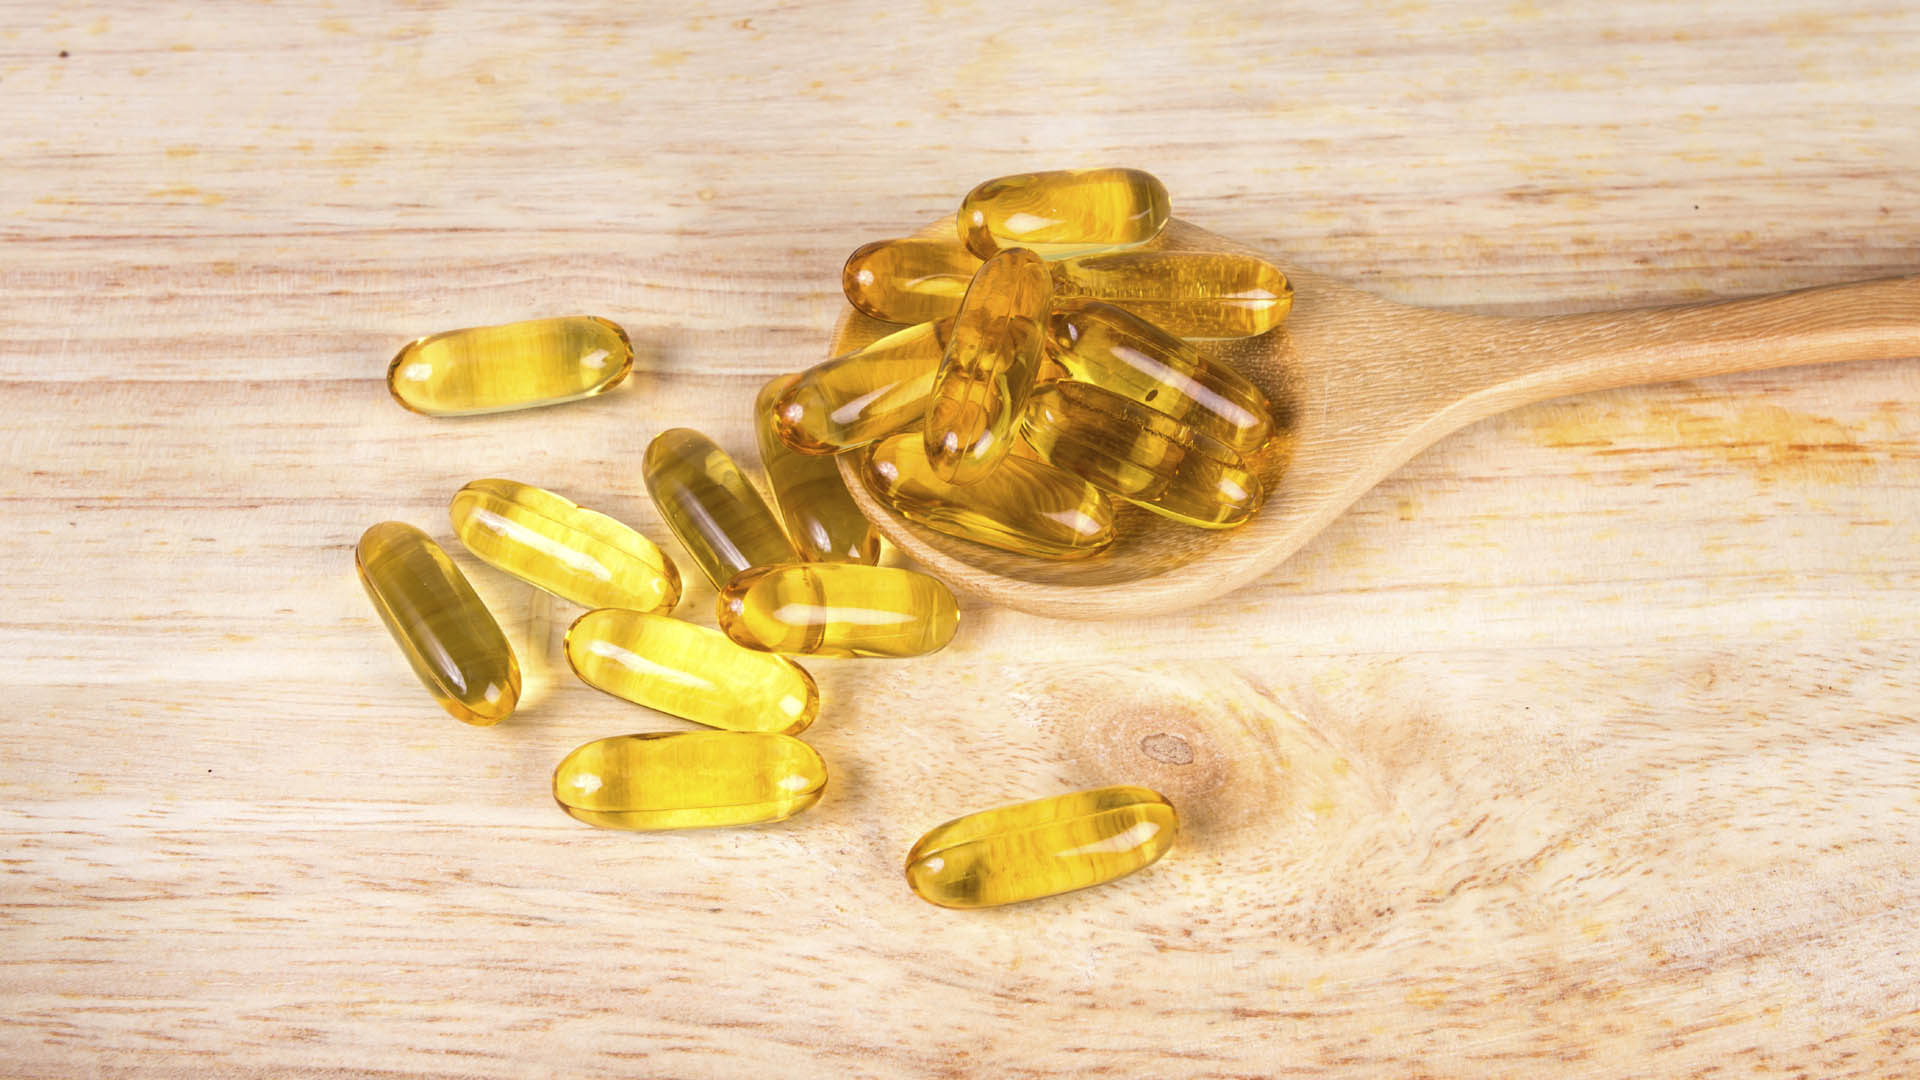 Investigadores brasileños demostraron que el uso de los suplementos de vitamina D puede retrasar los cambios del equilibrio, evitando así caídas y fracturas